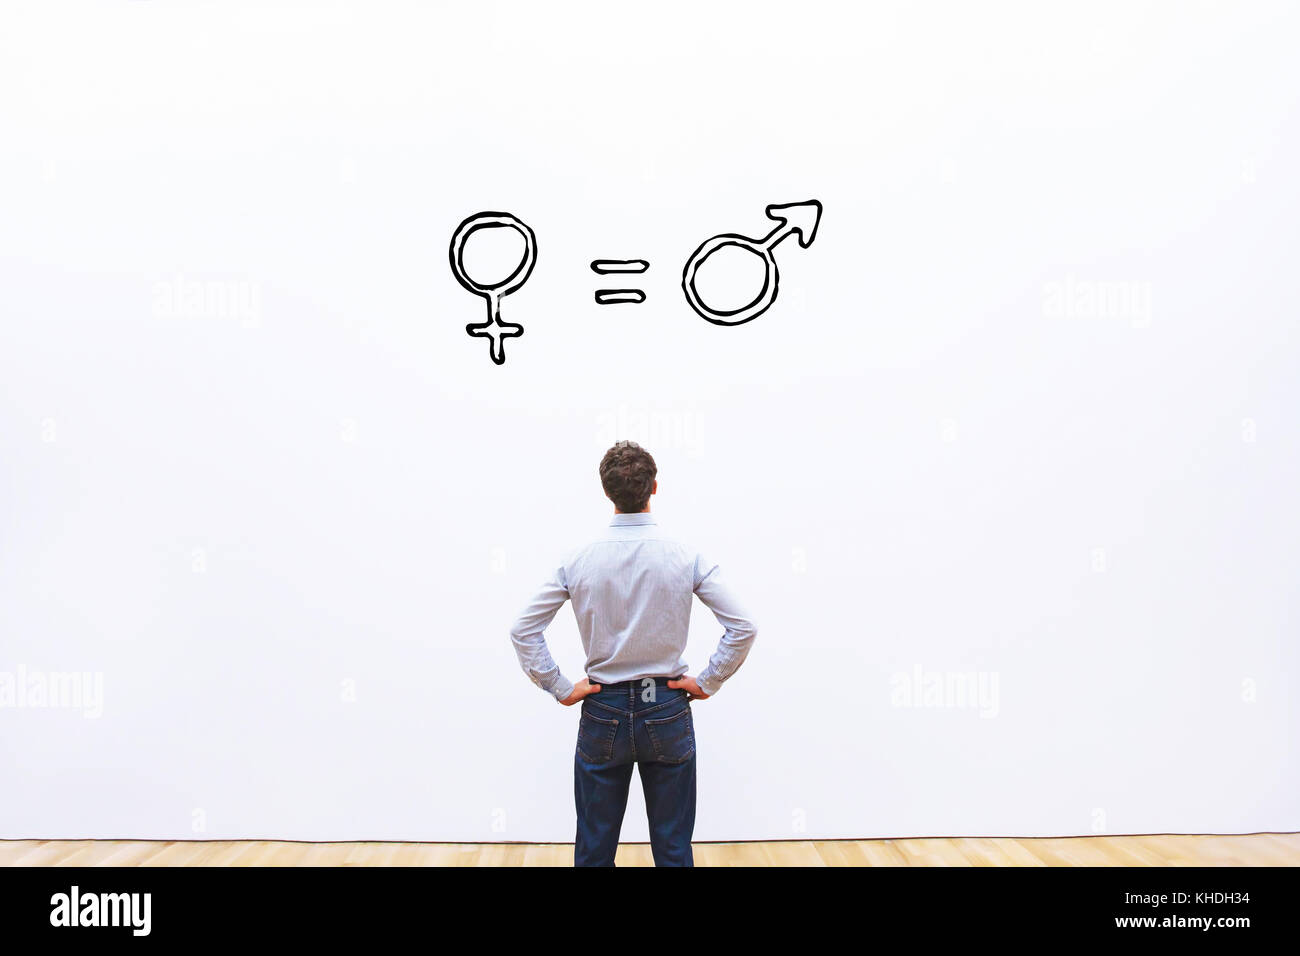 Concept de l'égalité des sexes, l'homme et la femme sont égaux Banque D'Images